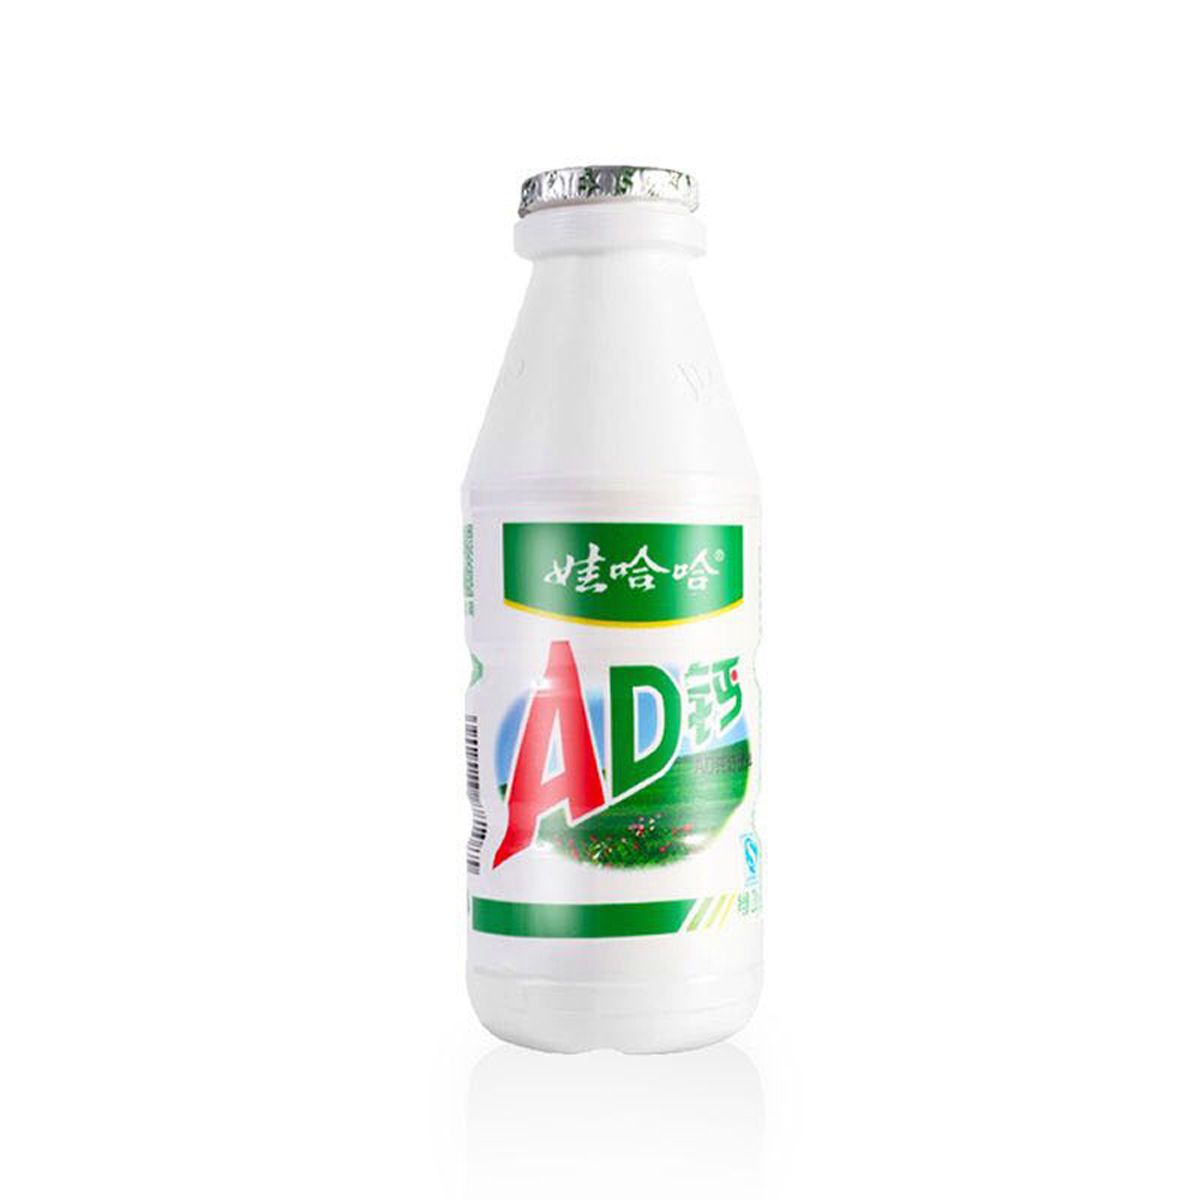 娃哈哈ad钙奶220g*12瓶/24瓶整箱 学生儿童乳酸菌风味